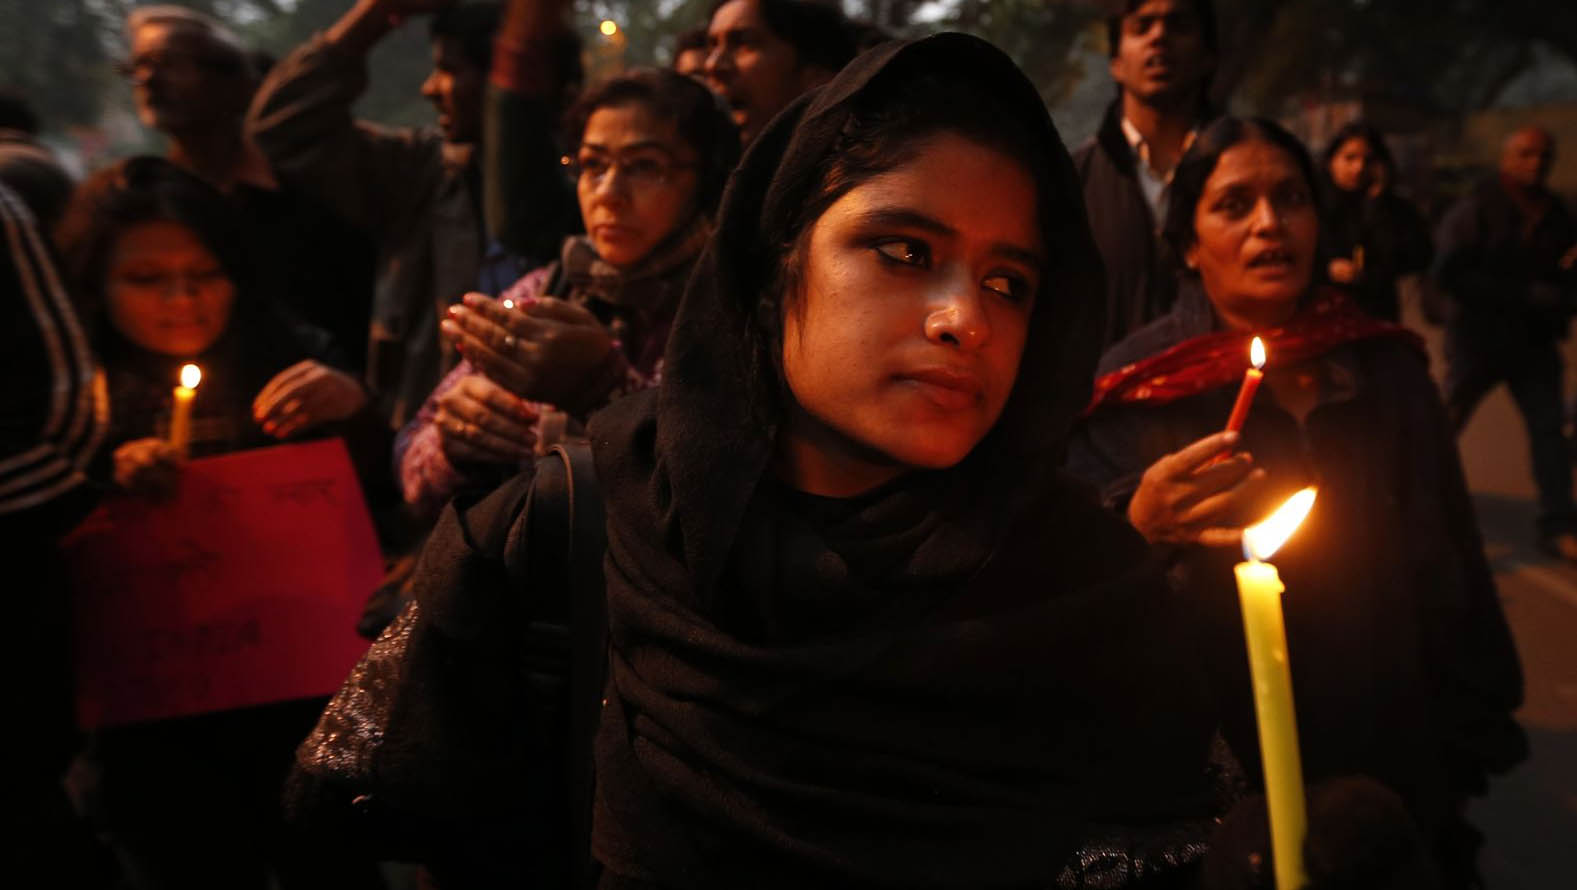 Pese al endurecimiento de las leyes contra la violación en la India, se siguen registrando abusos sexuales contra las mujeres. (Foto: elsiglo.com.ve)